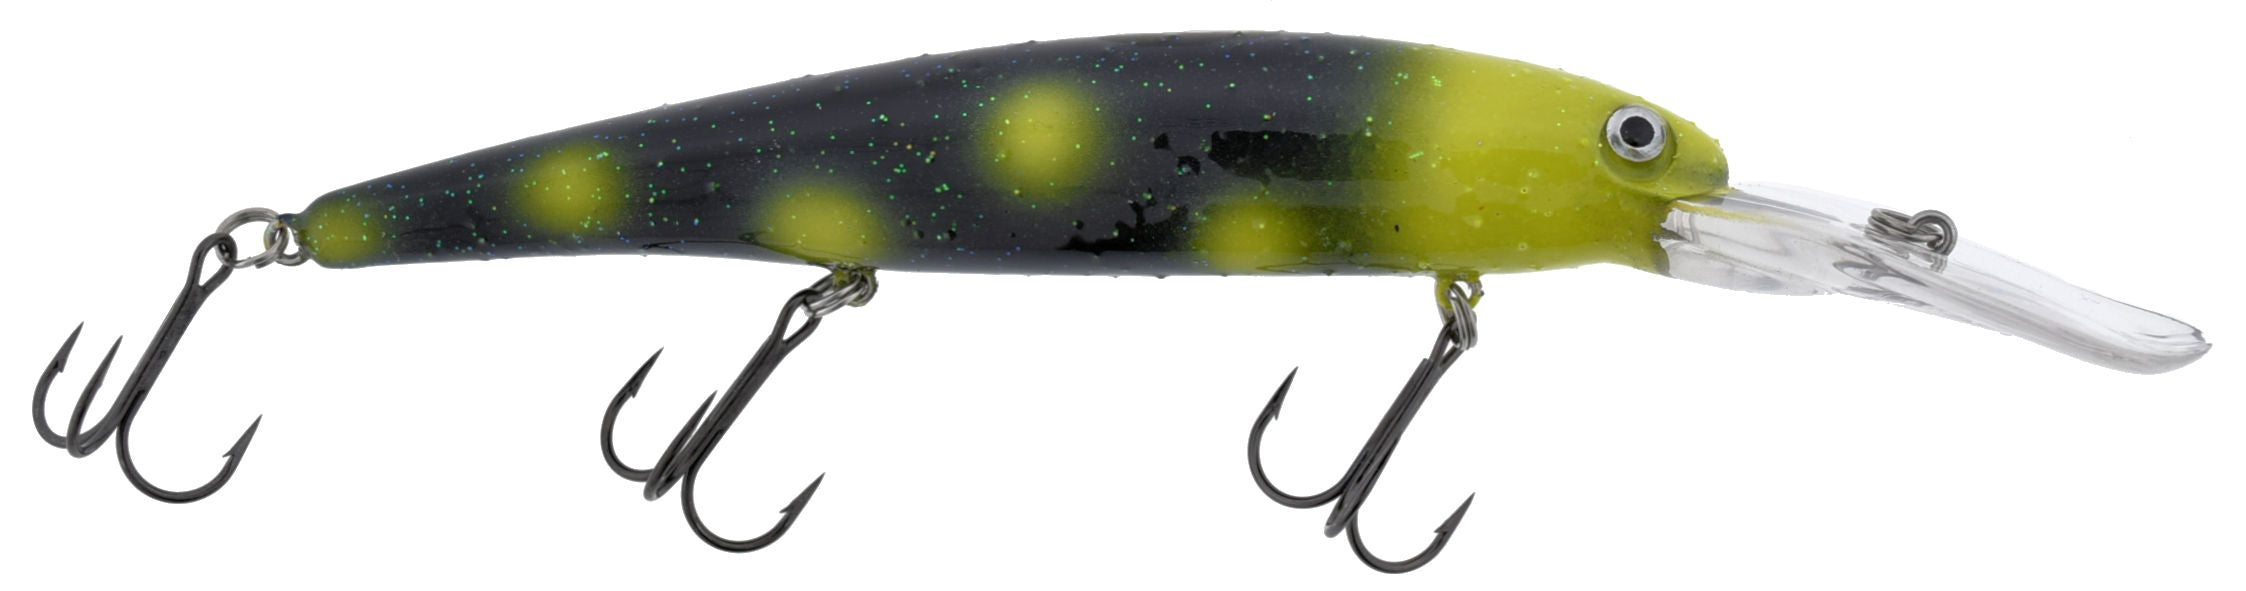 Custom Walleye Deep_Salamander